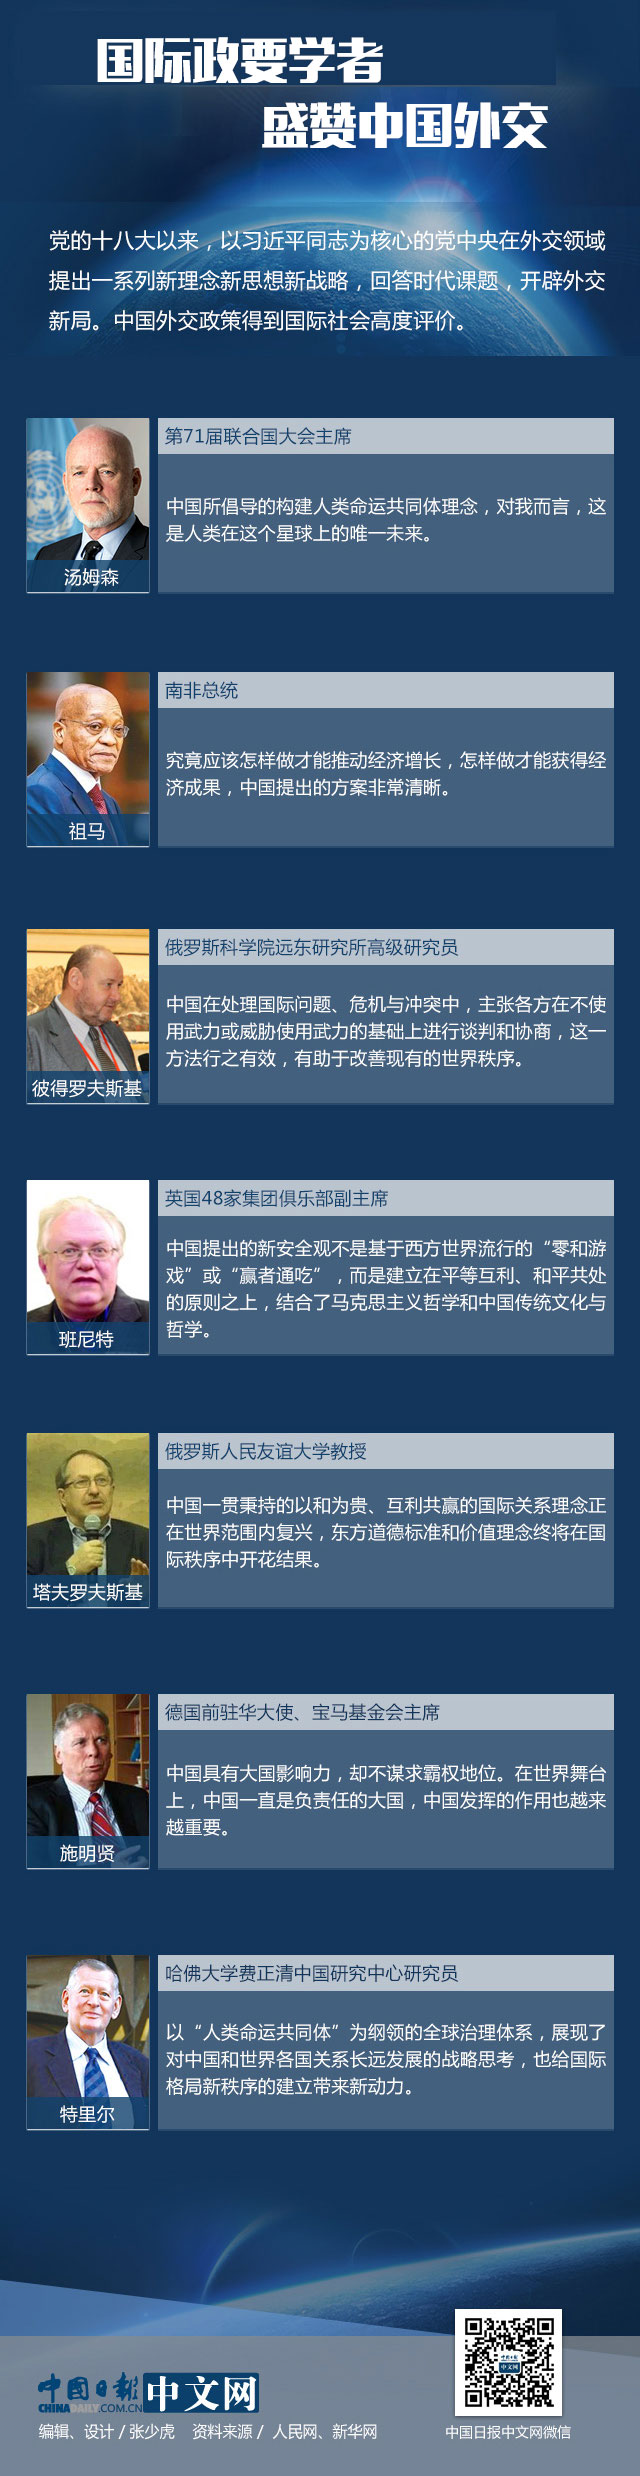 【理上网来•喜迎十九大】国际政要学者盛赞中国外交